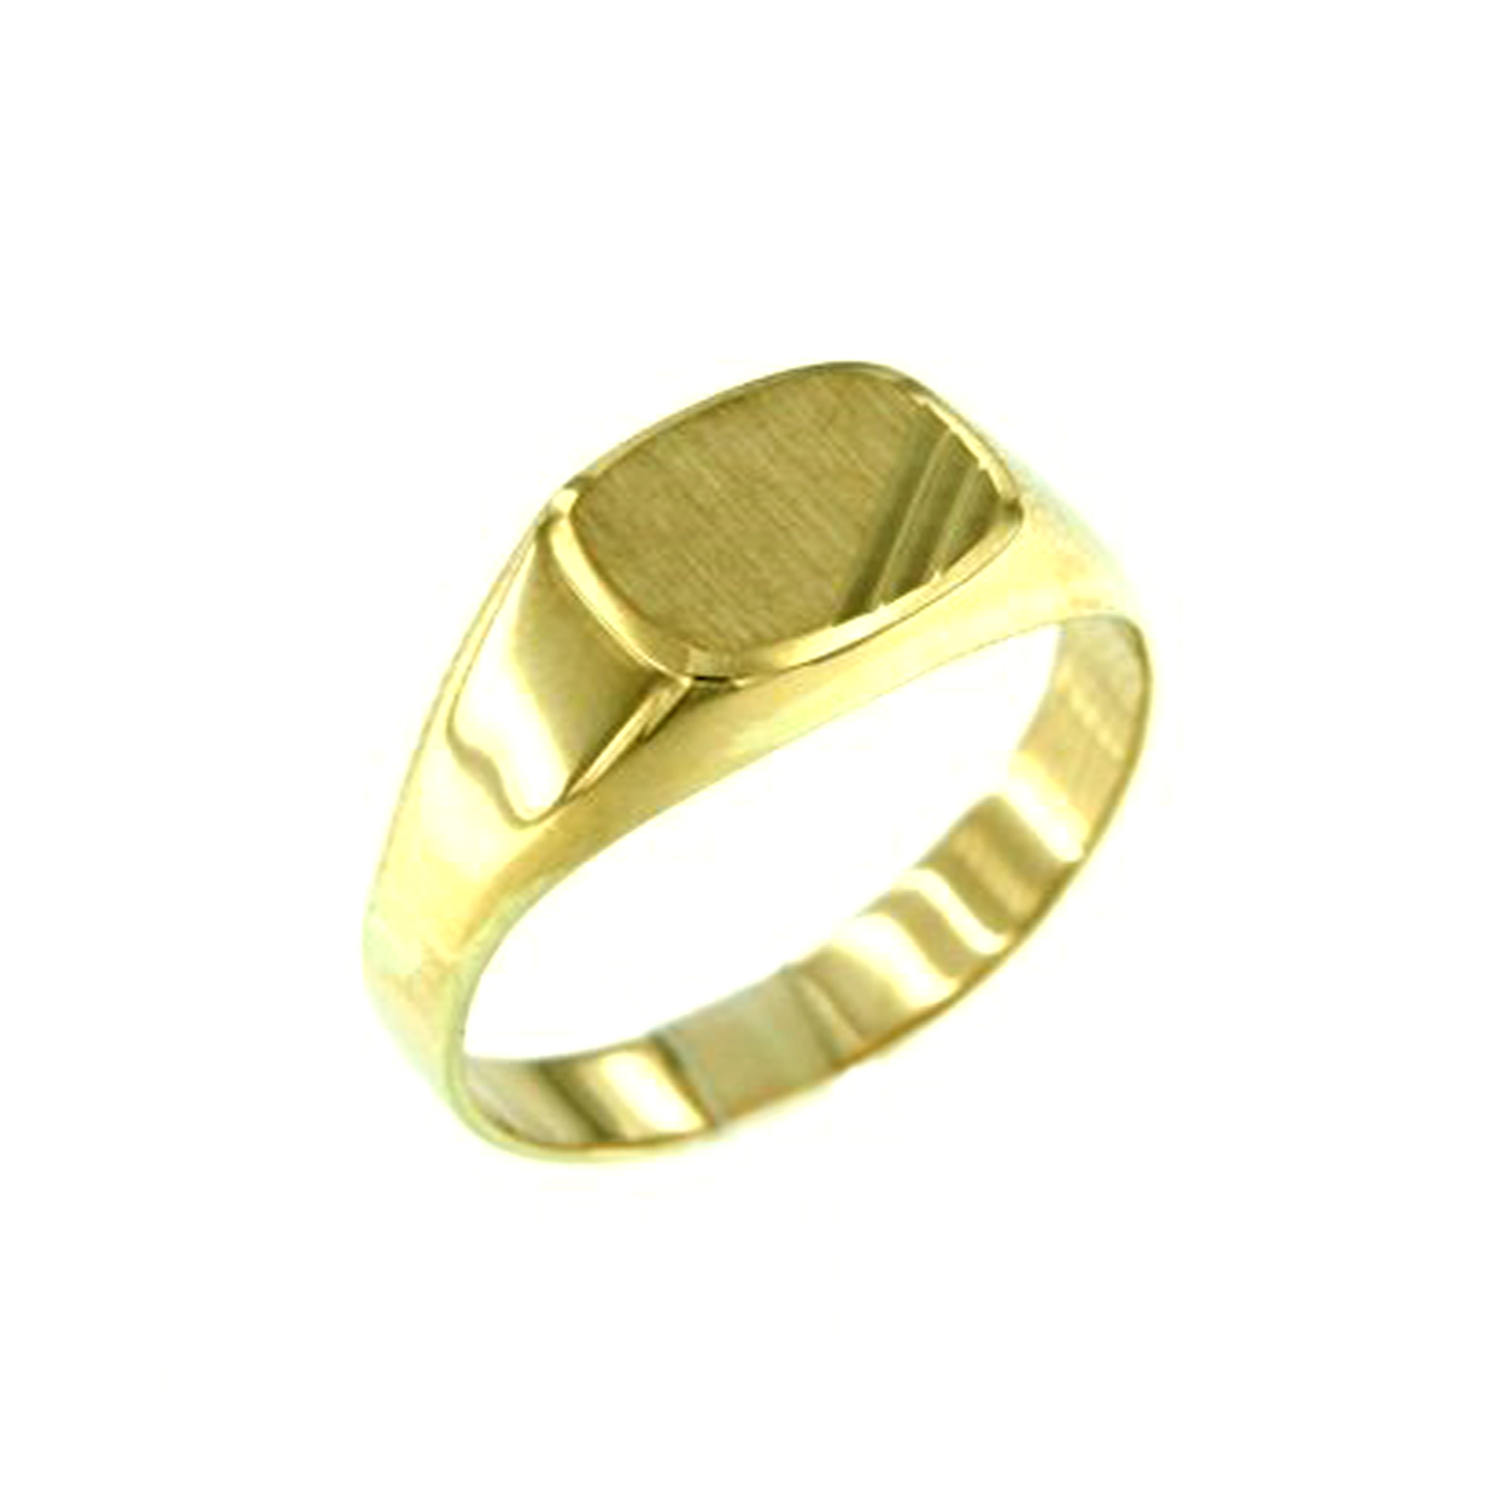 MOISS Moiss prsten ze žlutého zlata PETER RA000837 Velikost 64 mm RA000837 + doprava ZDARMA